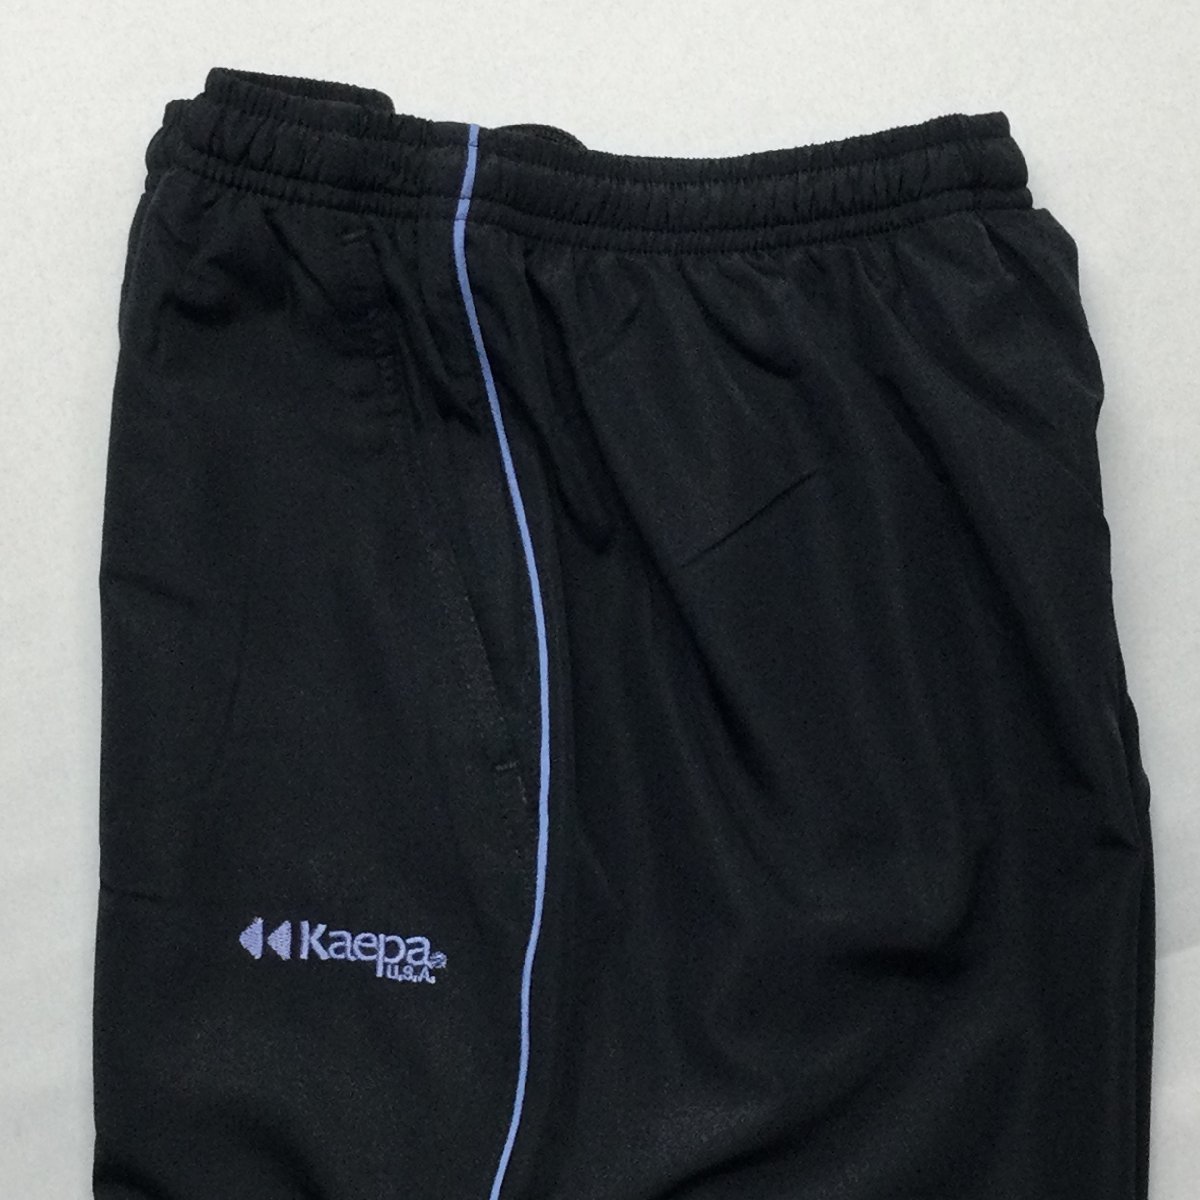 [ бесплатная доставка ][ новый товар ]Kaepa женский брейкер брюки ( с изнанки флис водоотталкивающая отделка UV cut длина ног 66) L черный * sax *473533-66